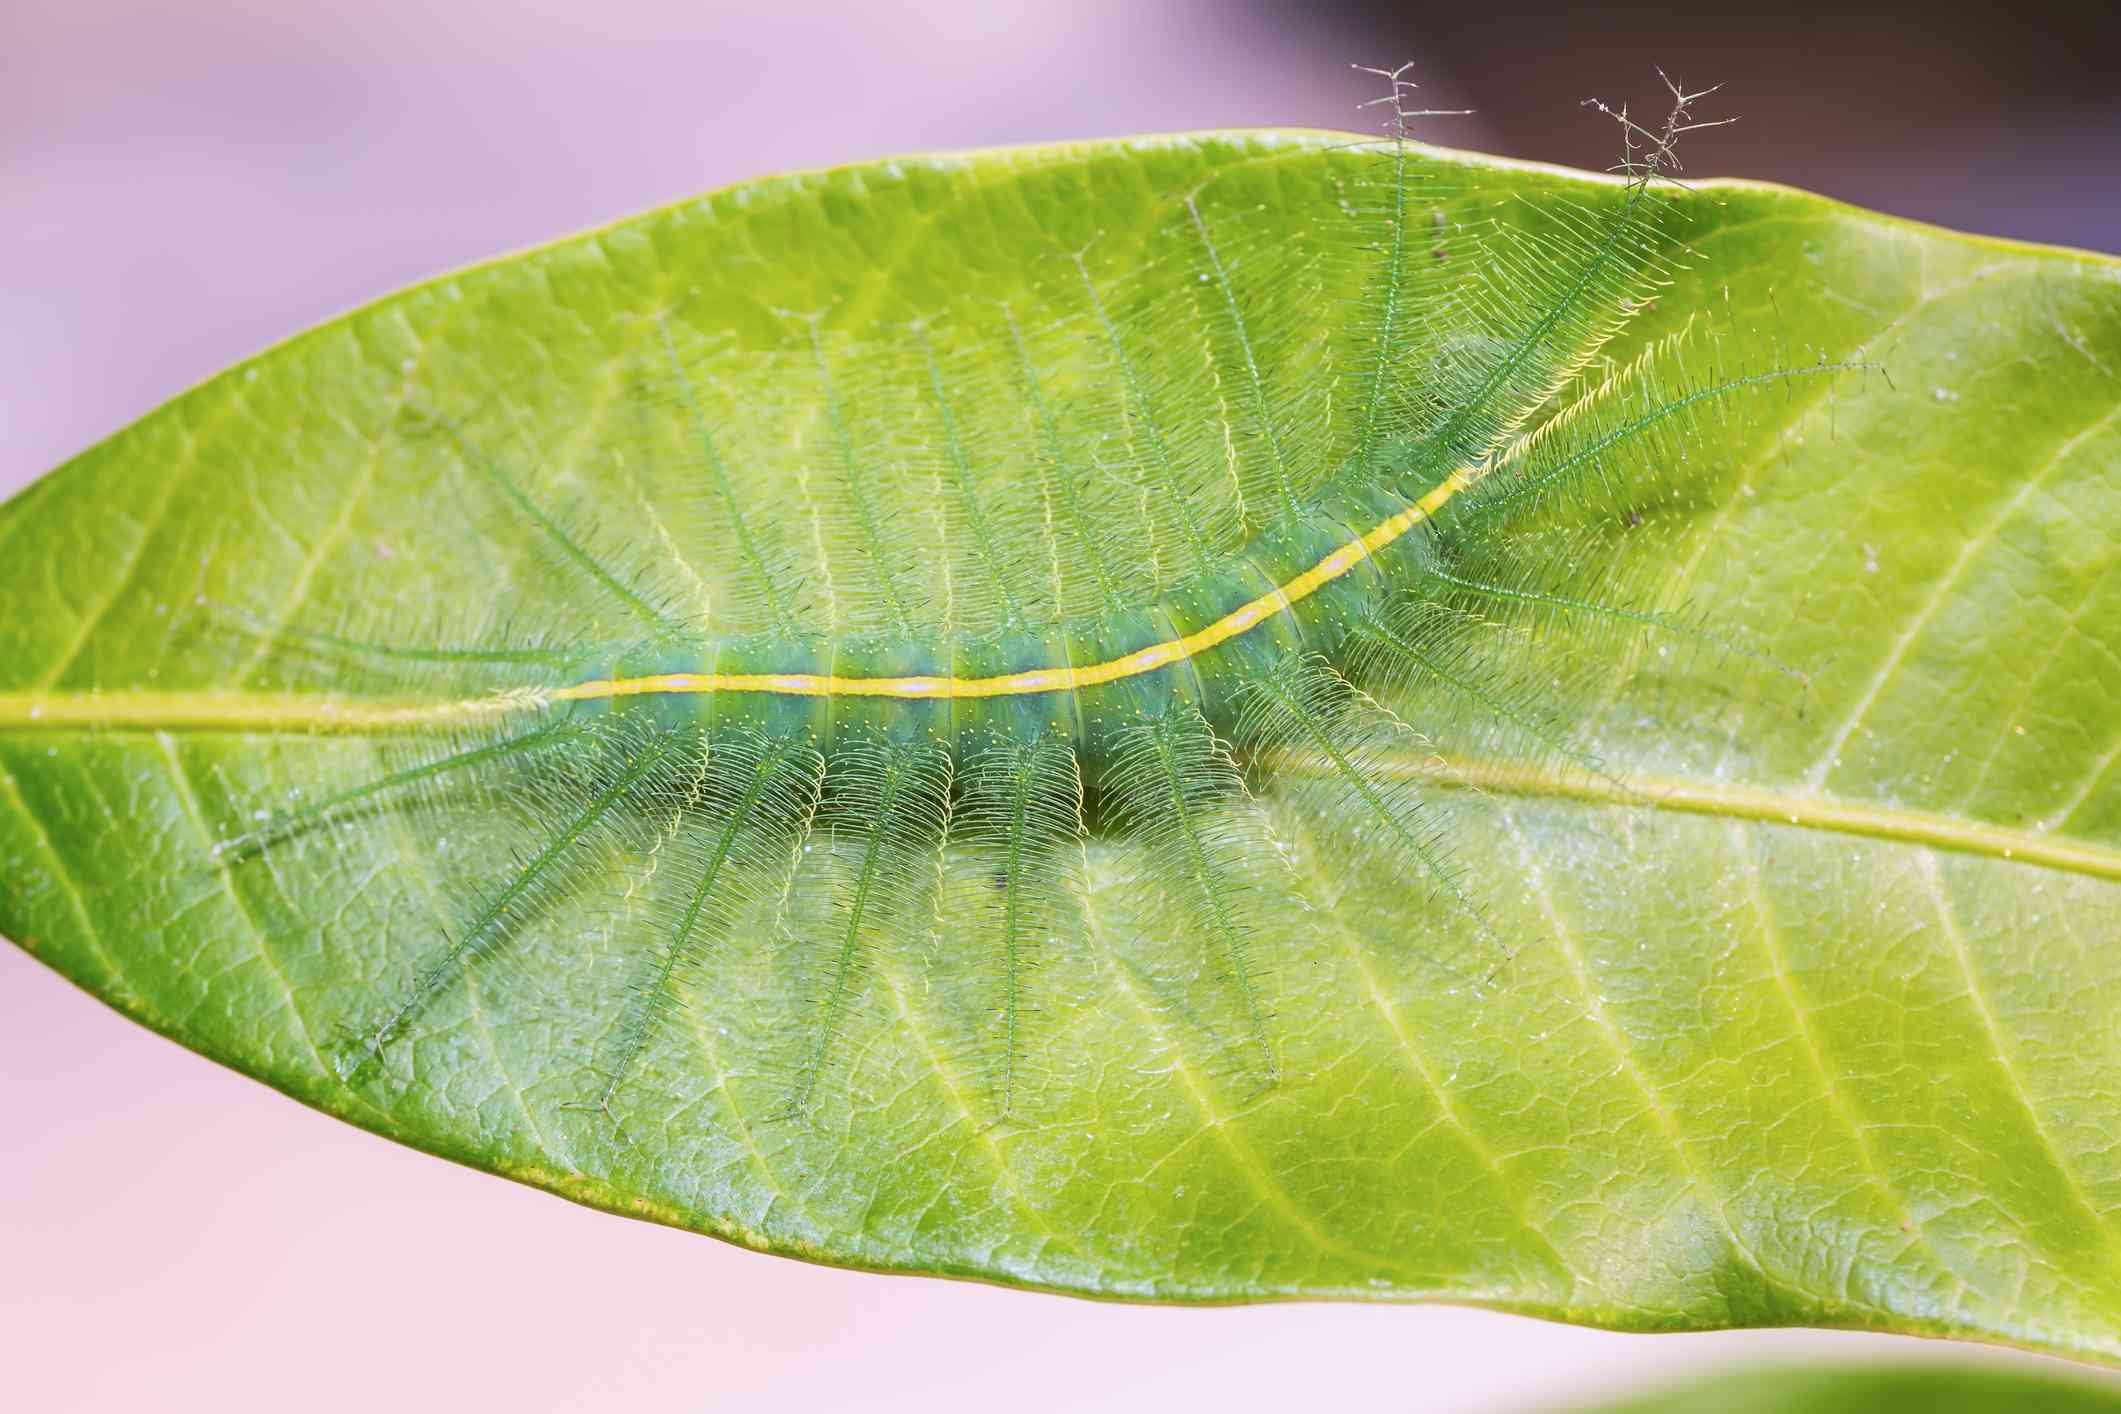 毛茸茸的绿色毛虫伸展在大芒果叶子上＂width=